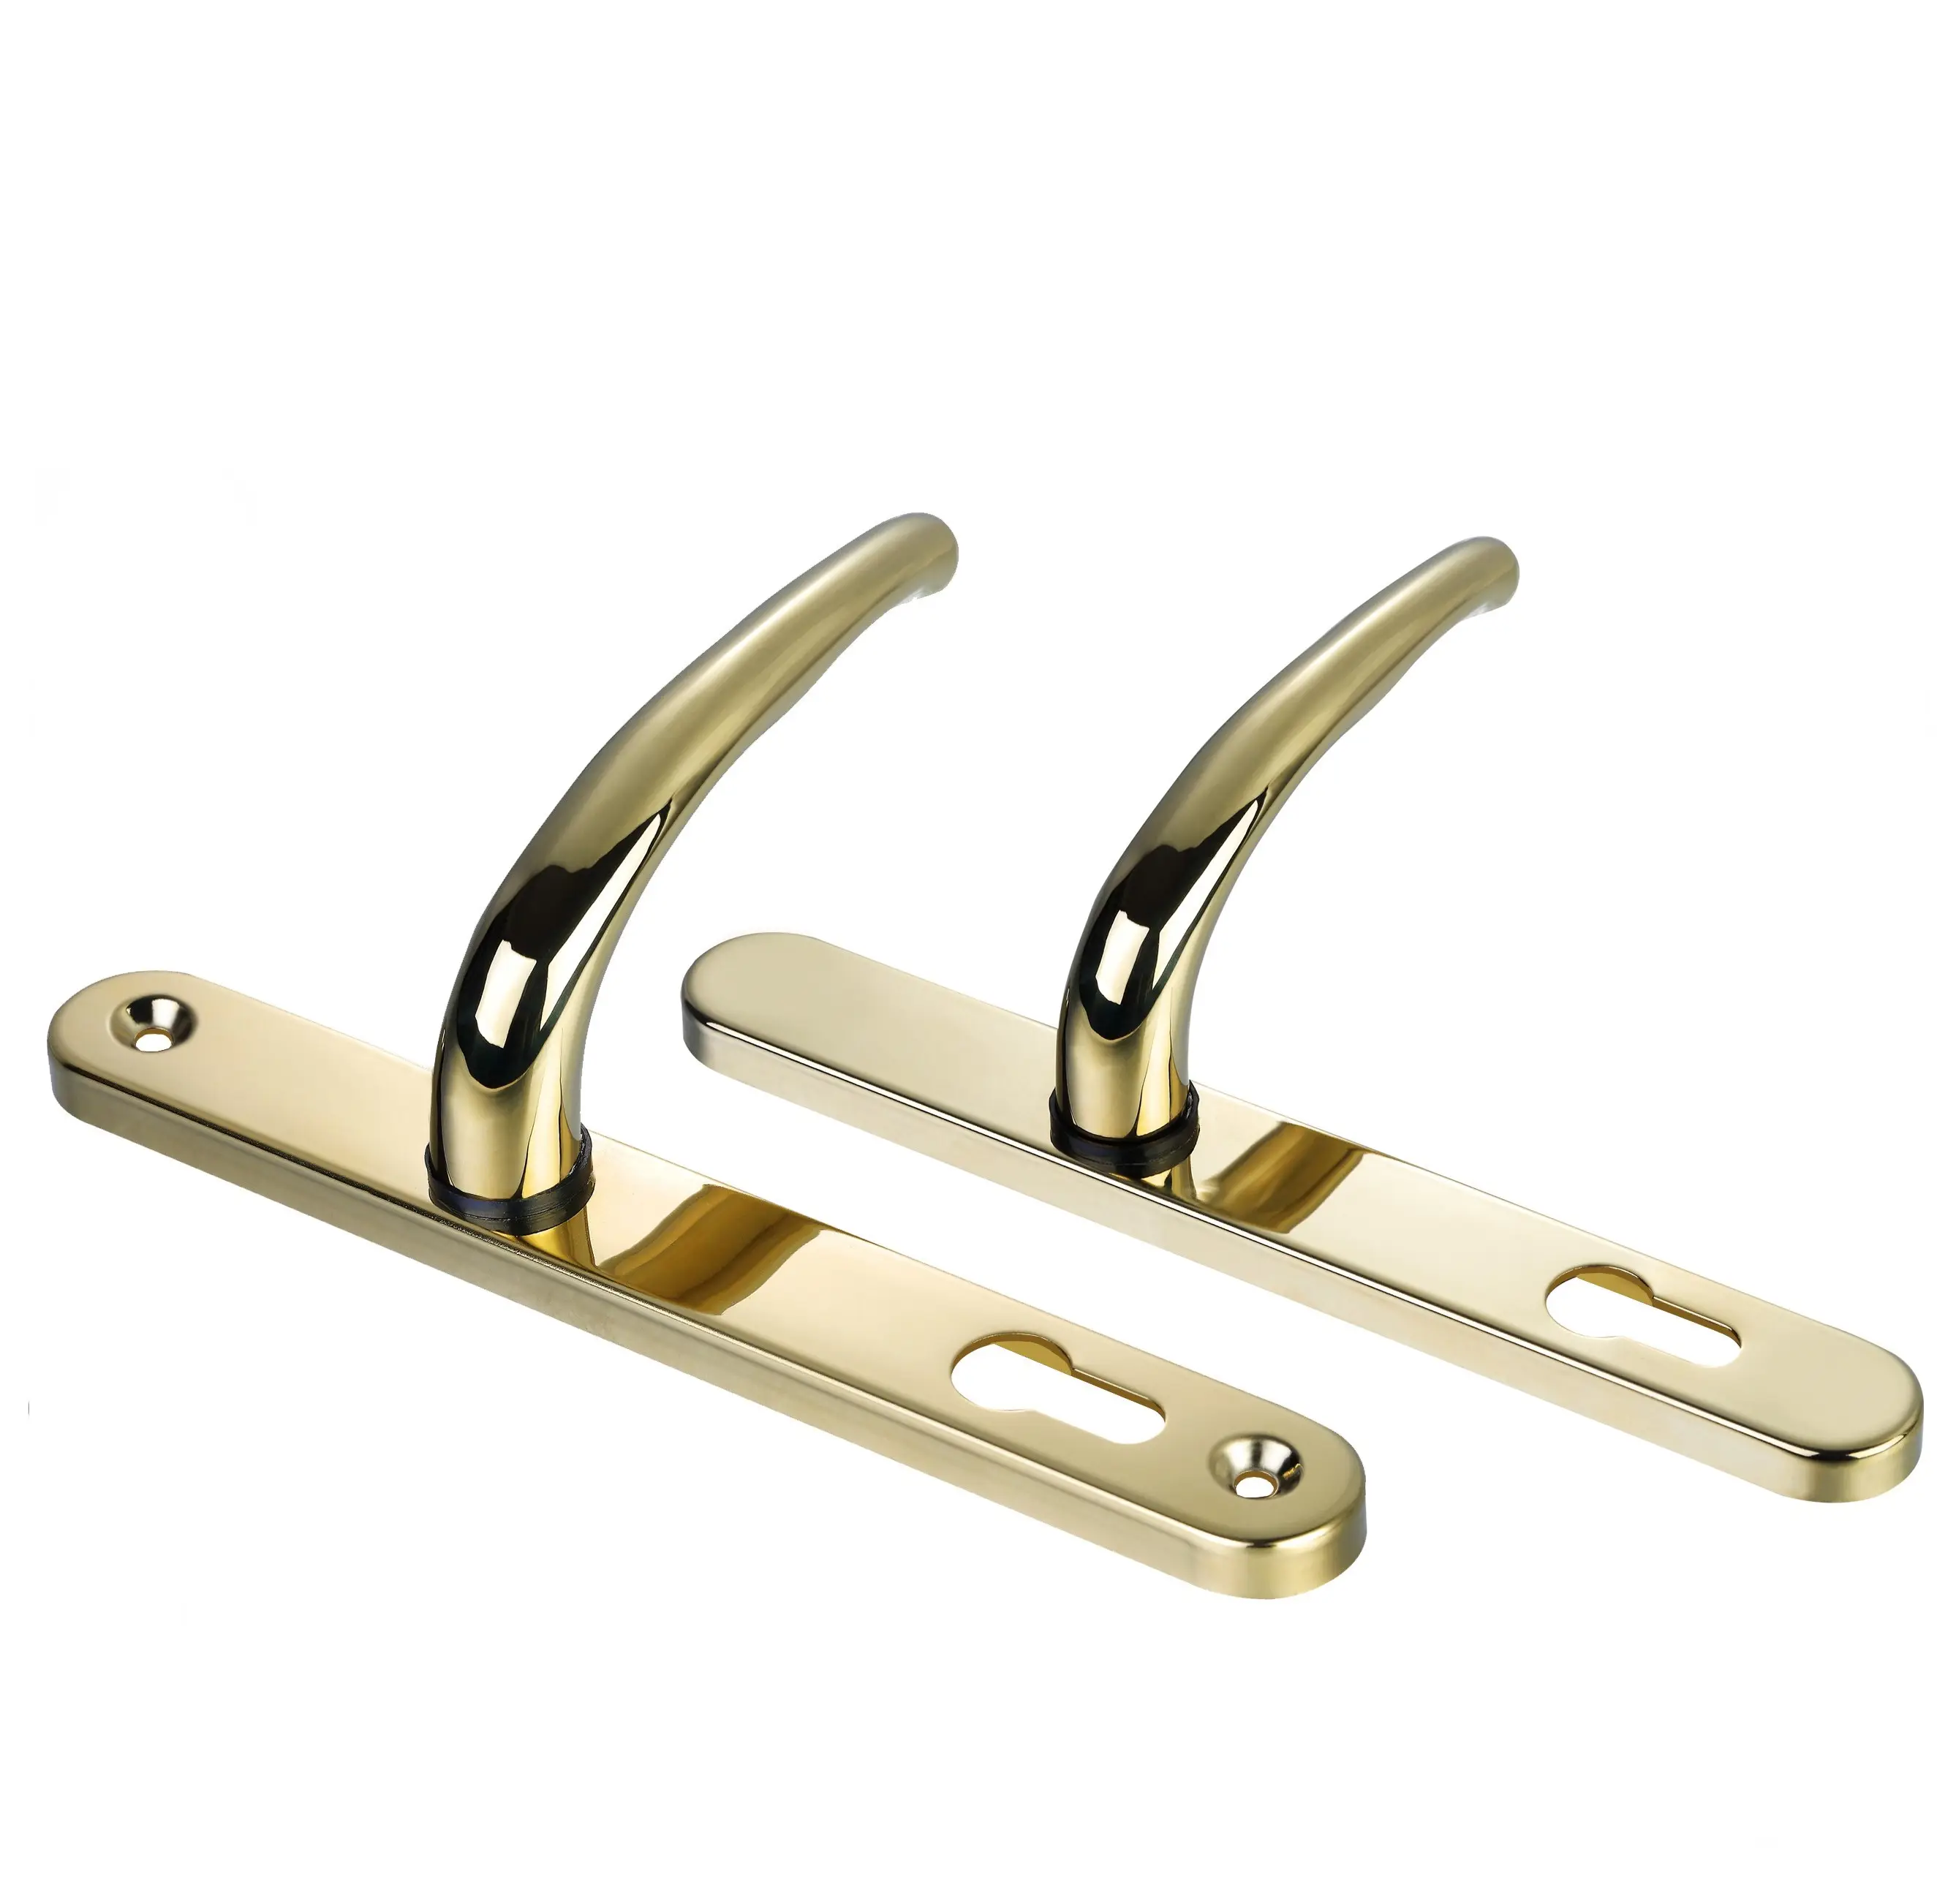 Hot koop externe ontwerp zinklegering serie lock set hendel deurklink